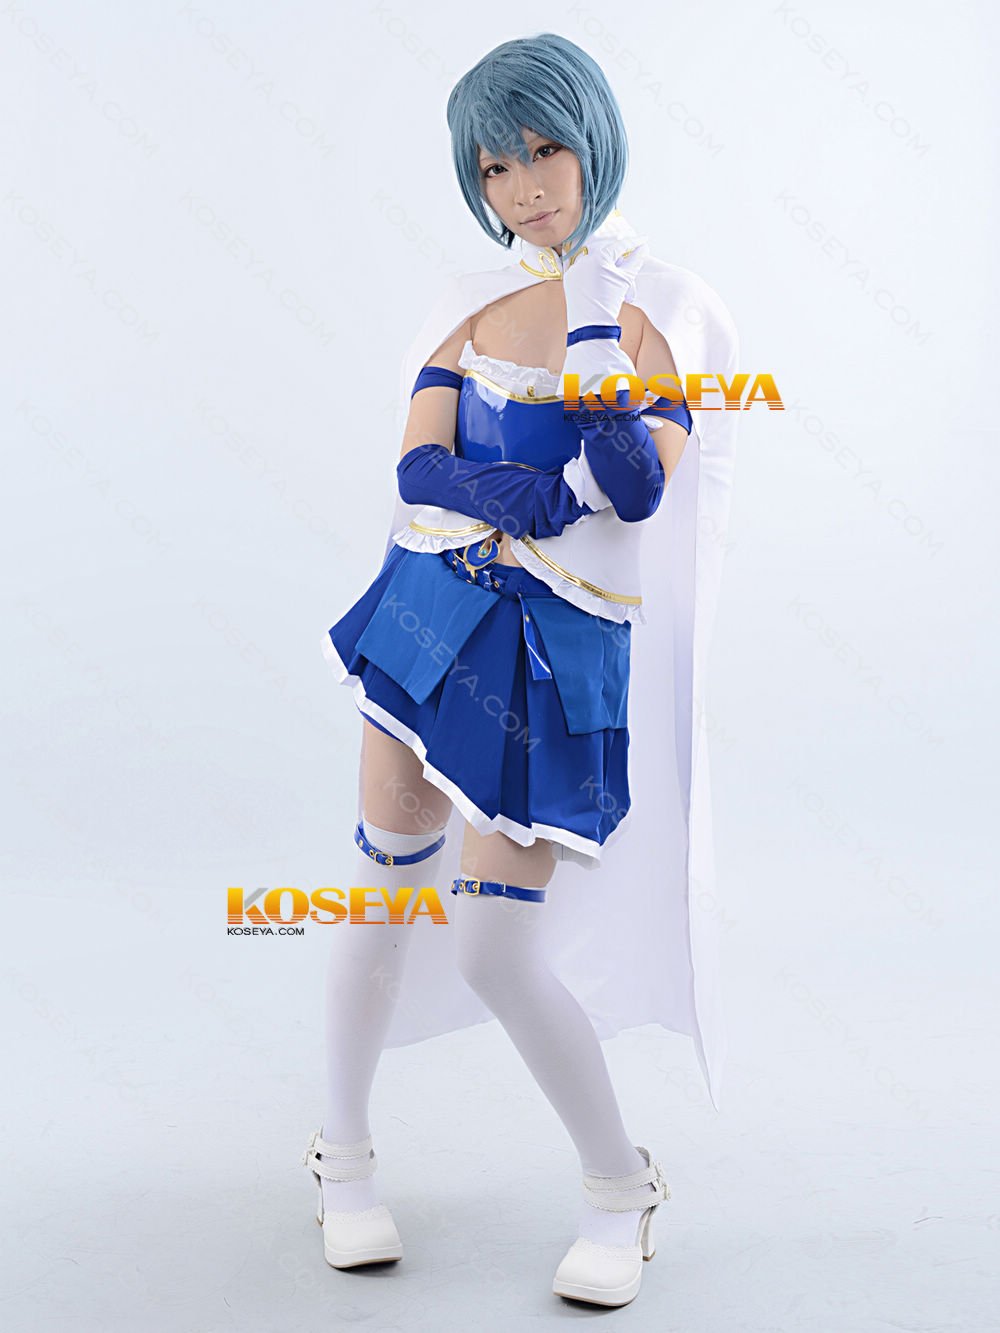 魔法少女まどか☆マギカ 美樹さやか 風 コスプレ衣装:KOSEYA.COM・通販